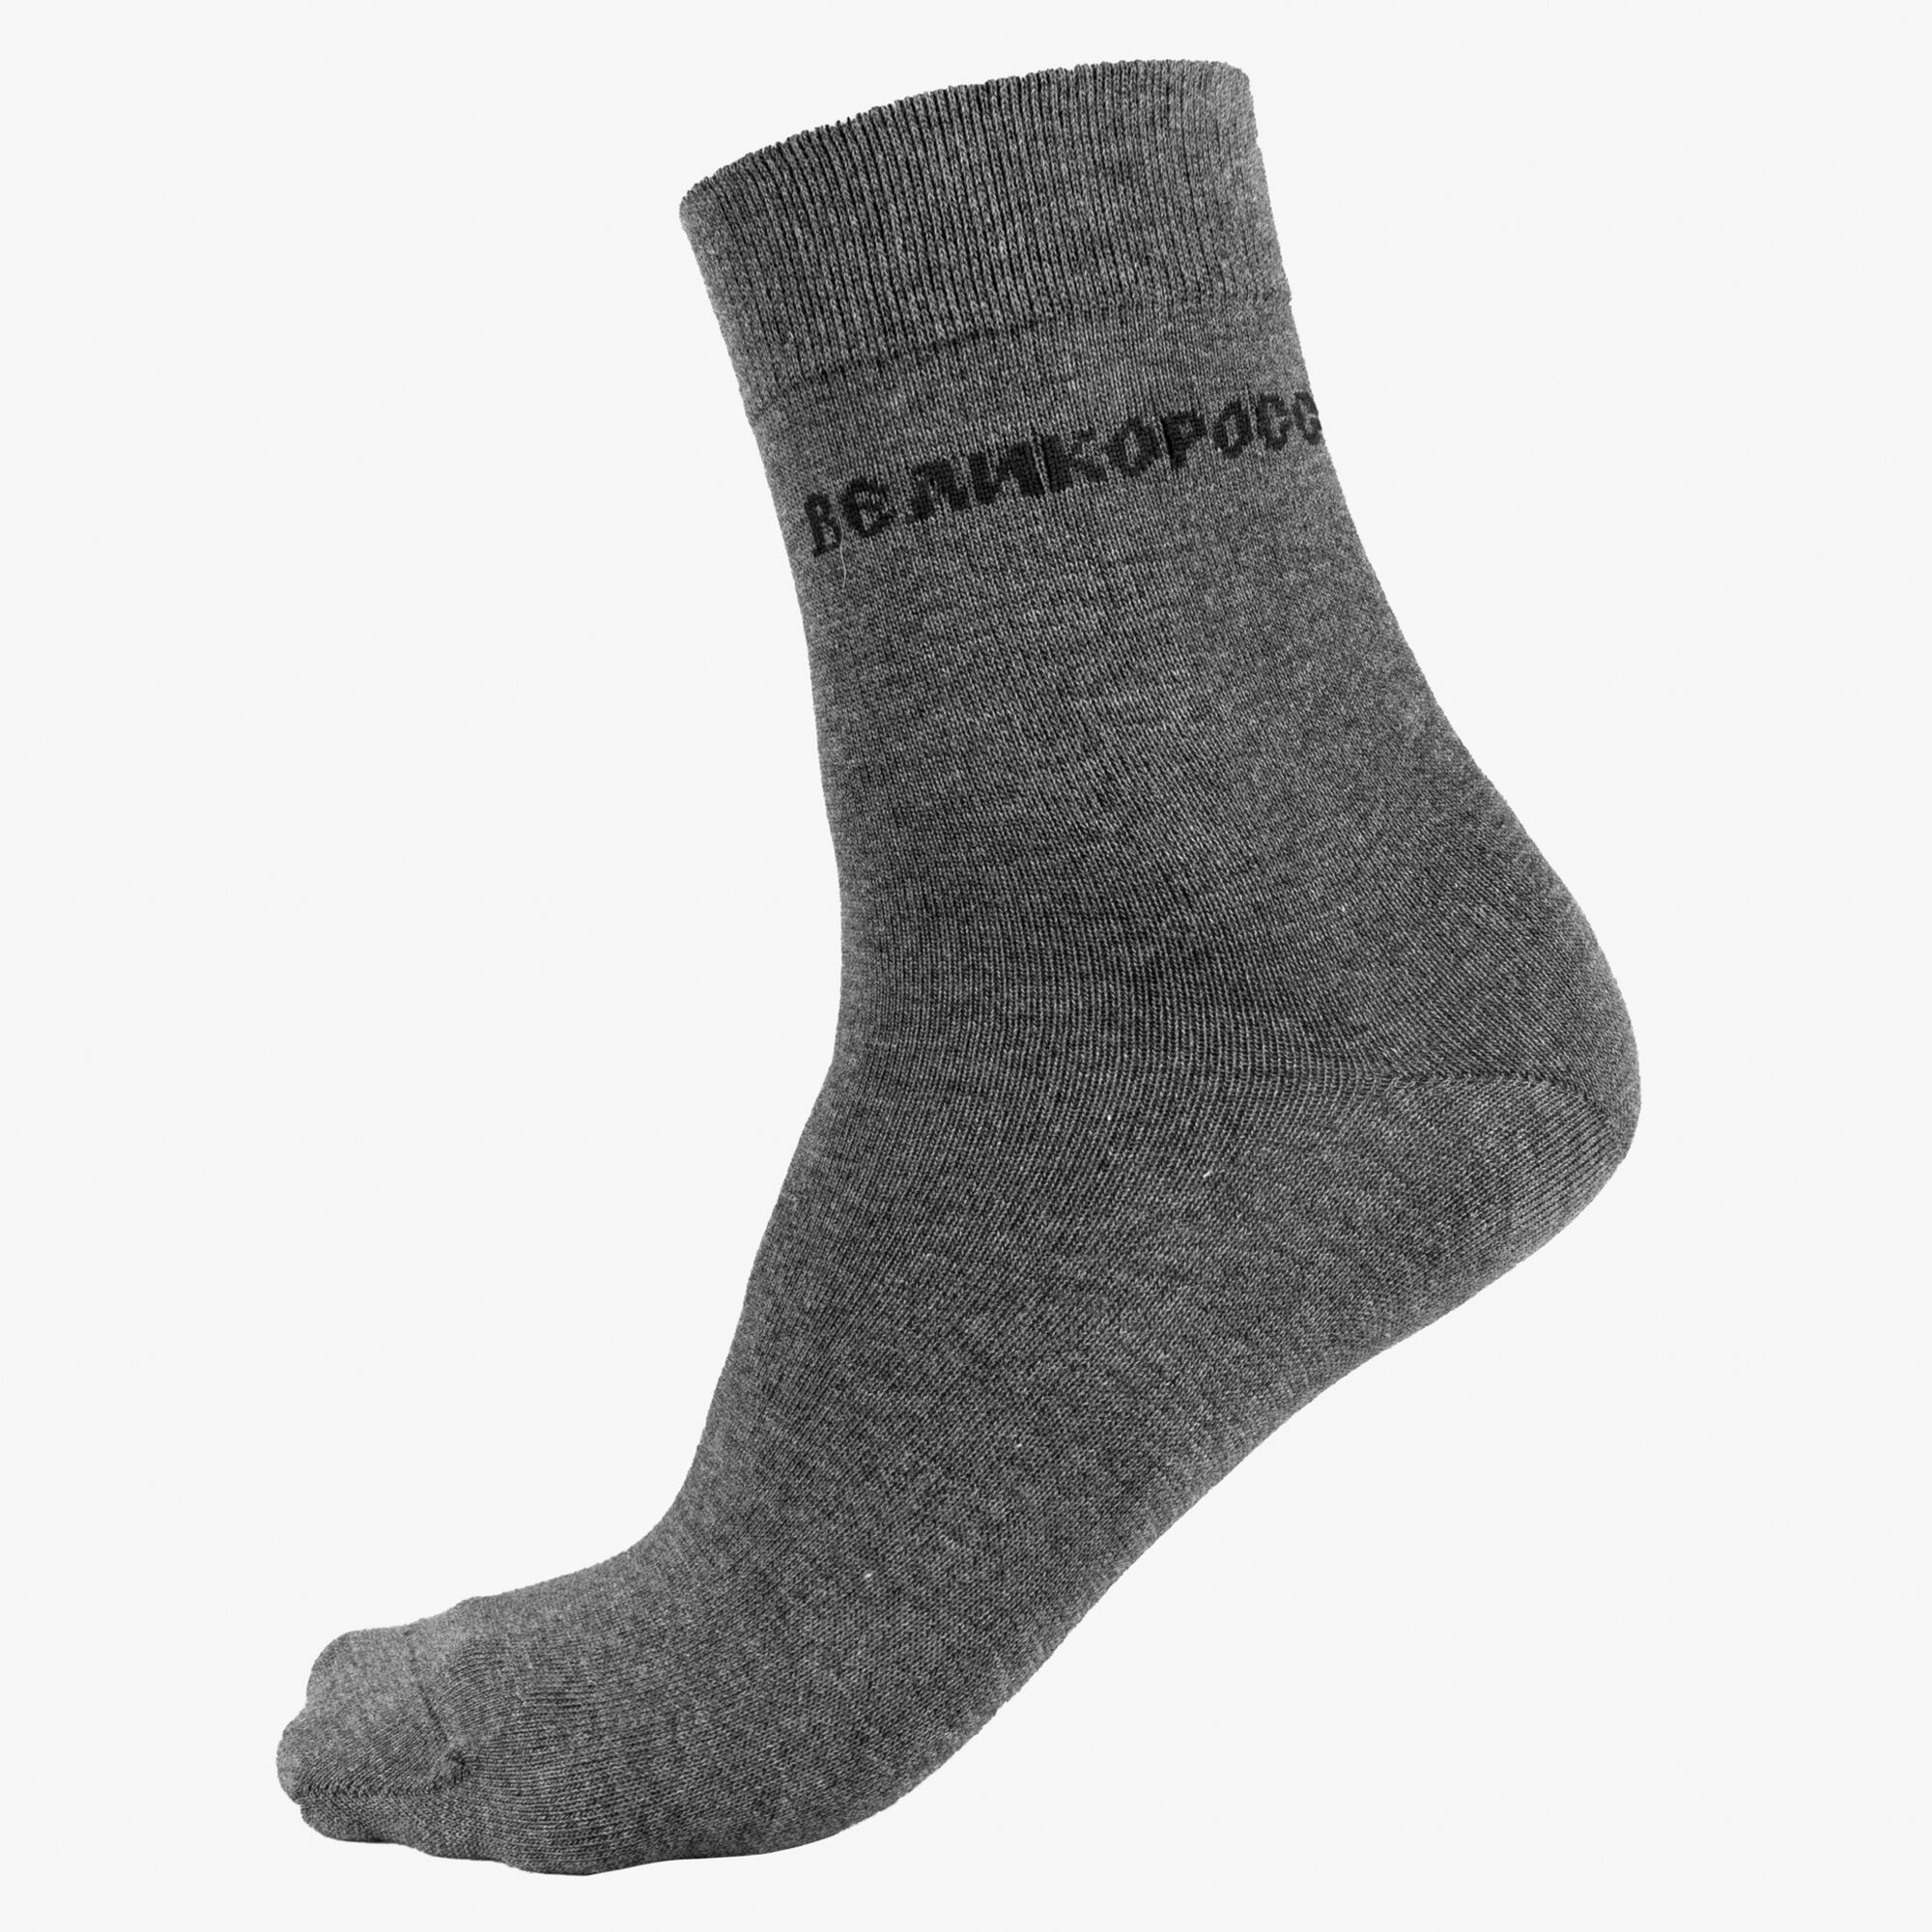 Мужские носки длинные серого цвета